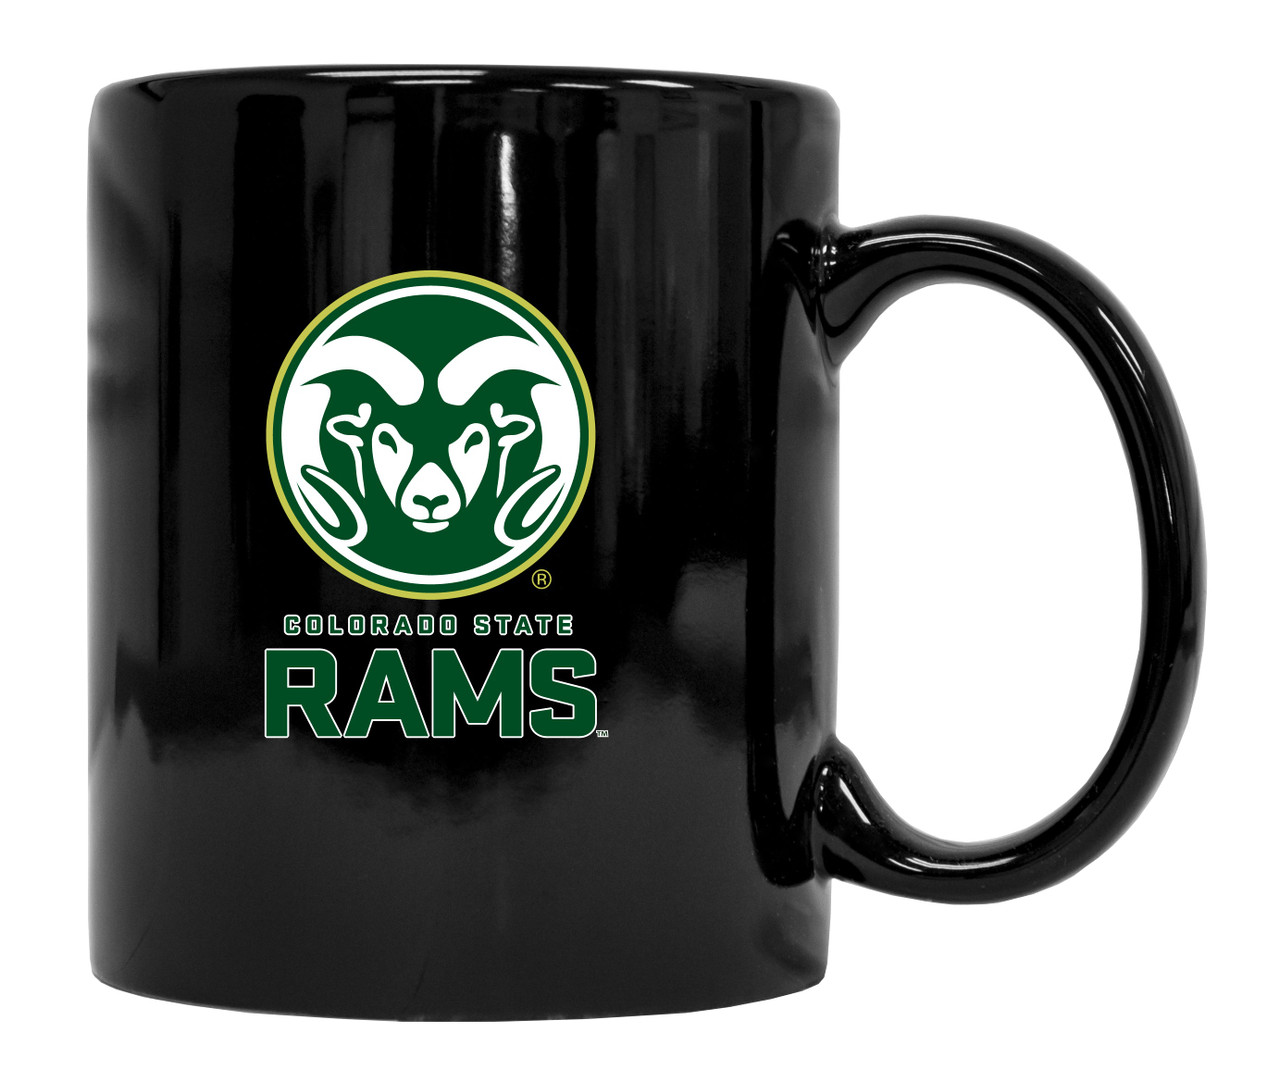 Colorado State Rams Black Ceramic Mug 2-Pack (Black).